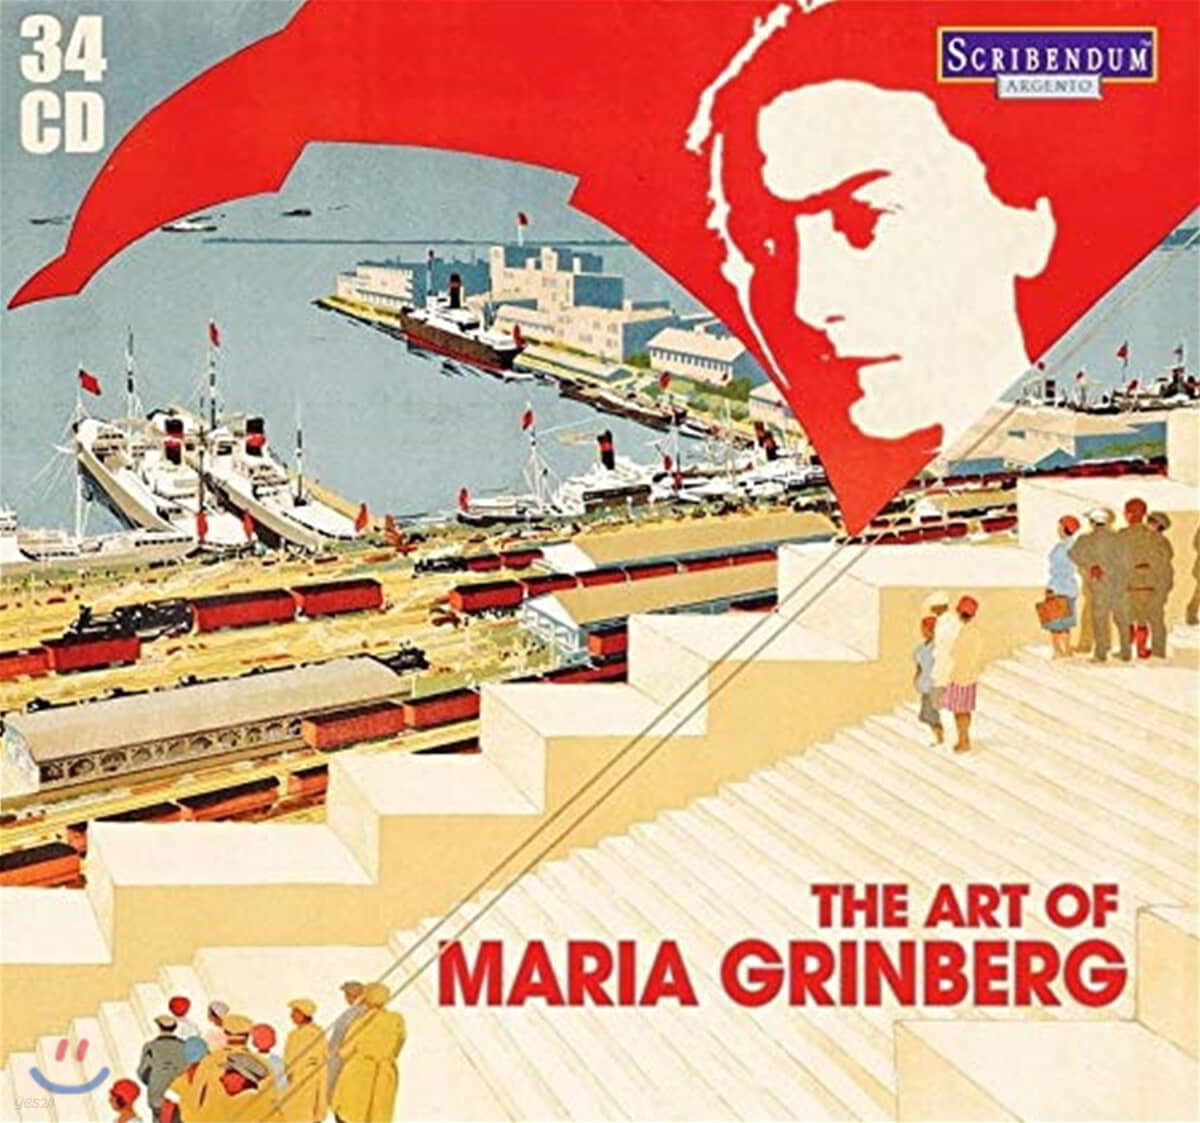 마리아 그린베르그 명연주 모음집 (The Art of Maria Grinberg)